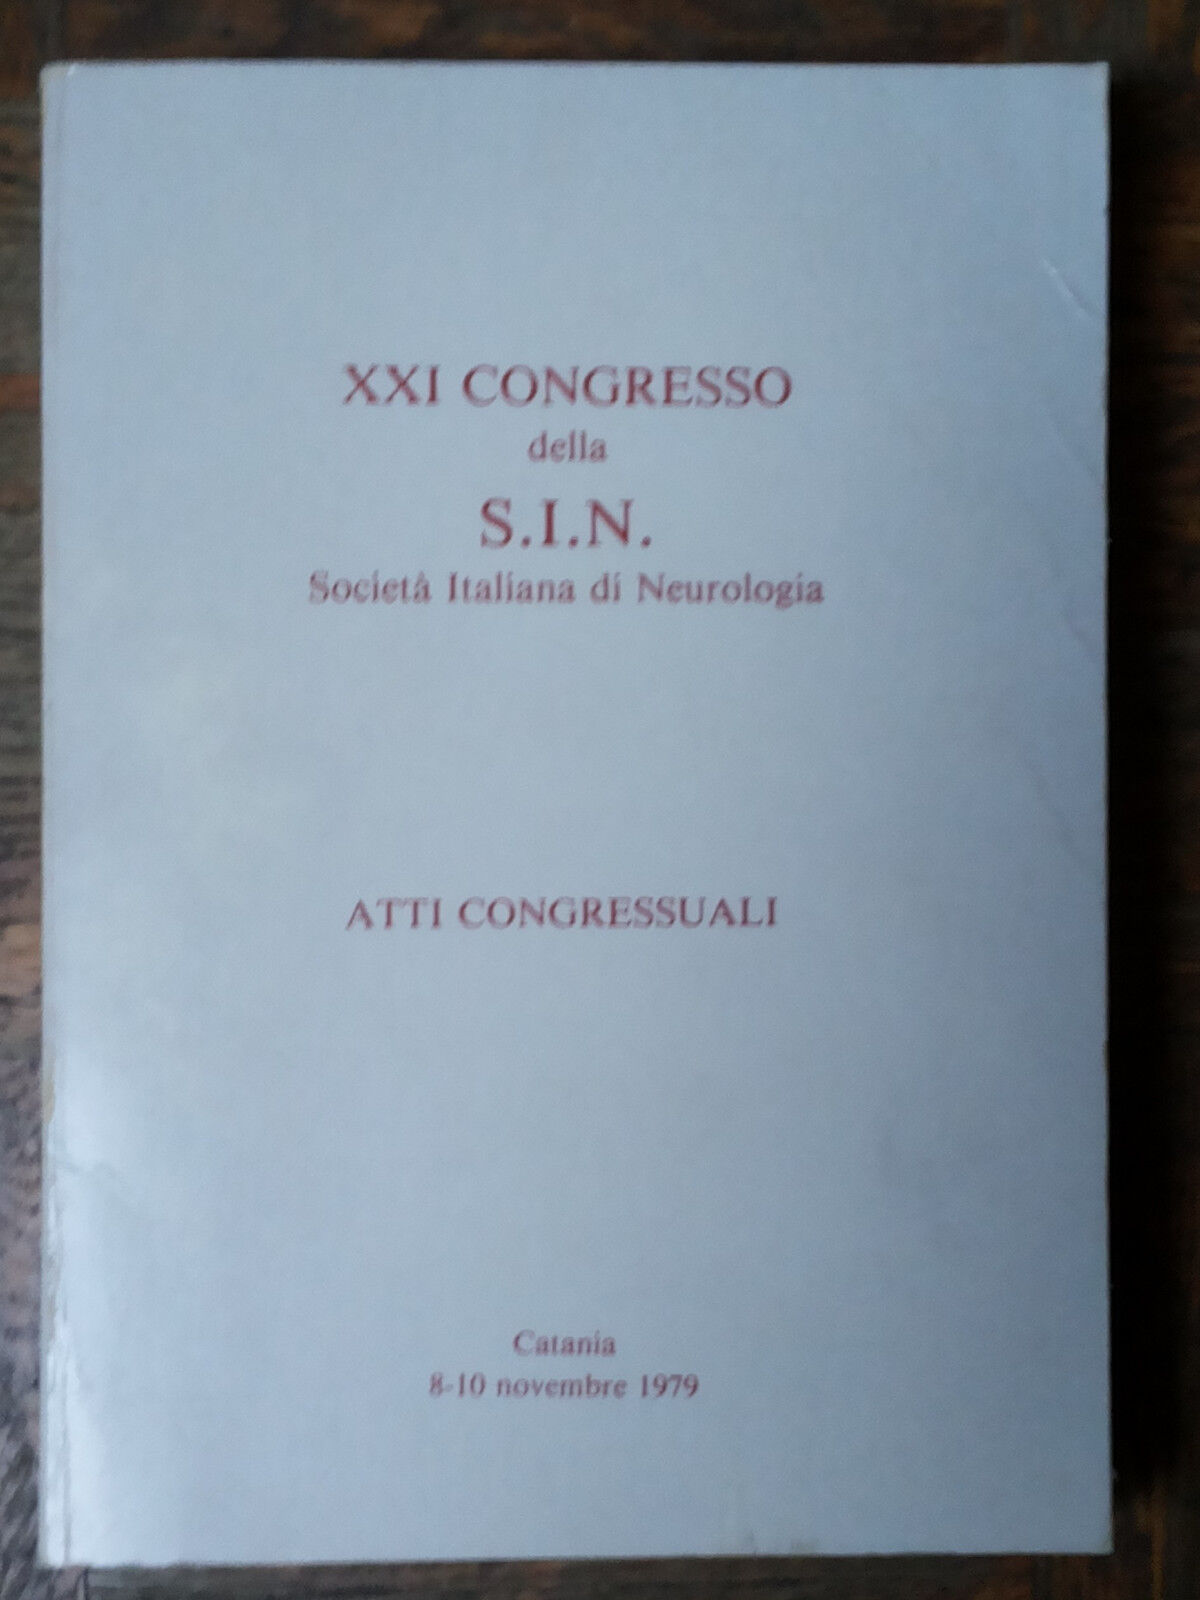 XXI Congresso della S.I.N.-AA.VV.- LaboratoriRicercaFidiaFramaceutici,1979 -R